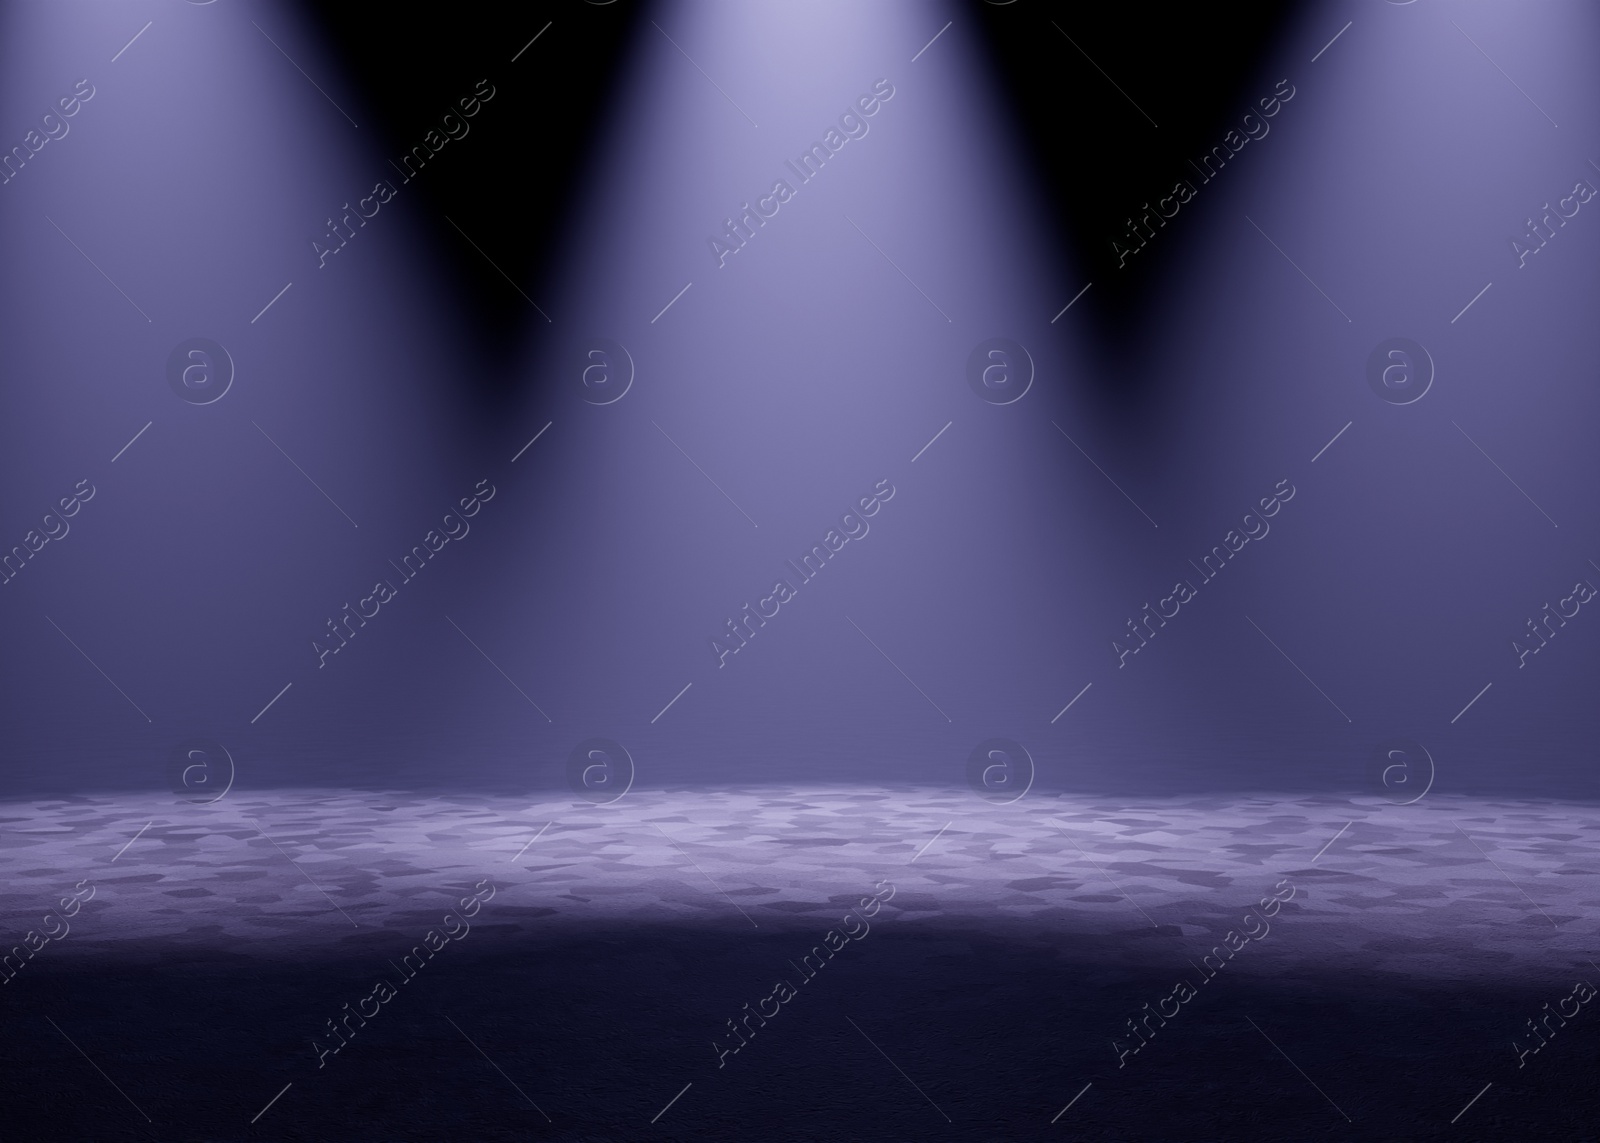 Image of Bright spotlights in dark room. Performance equipment